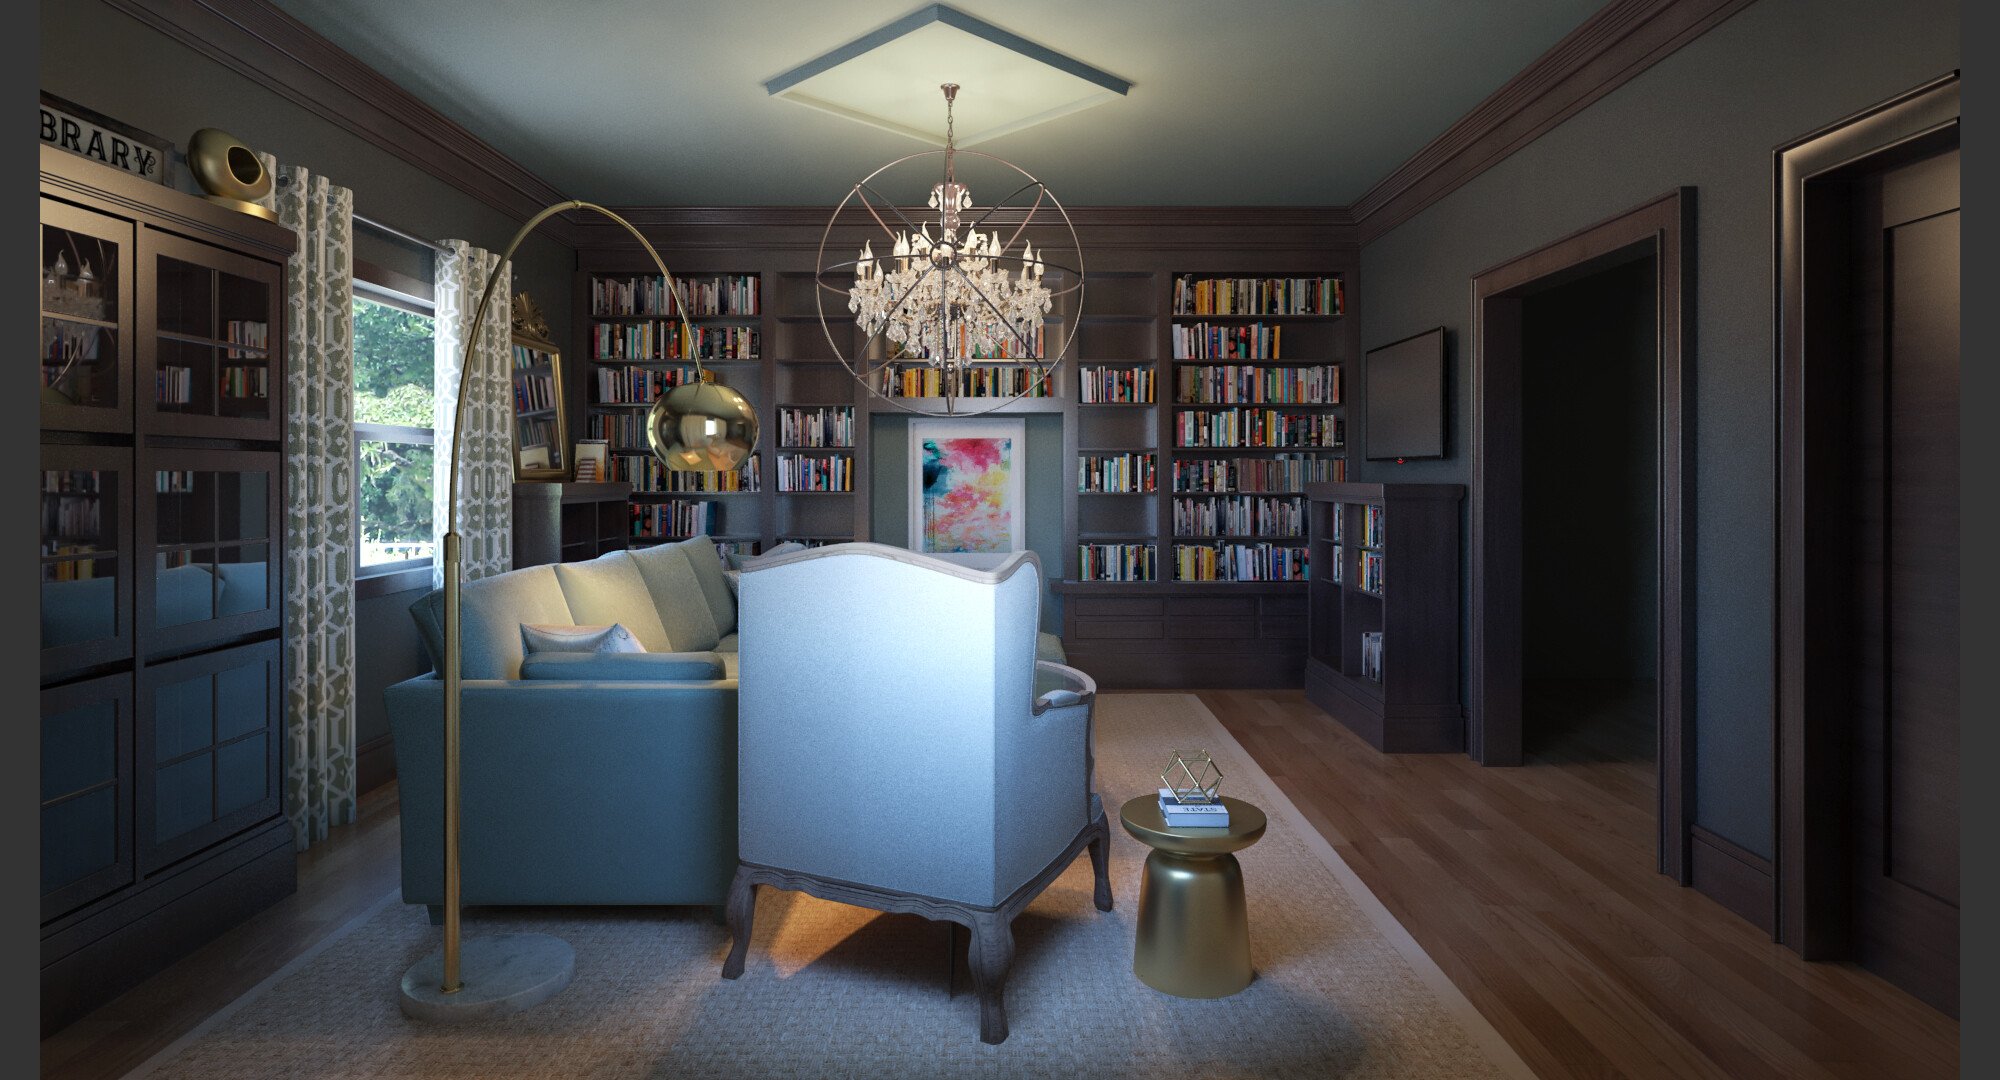 Online Living Room Design interior design help 2